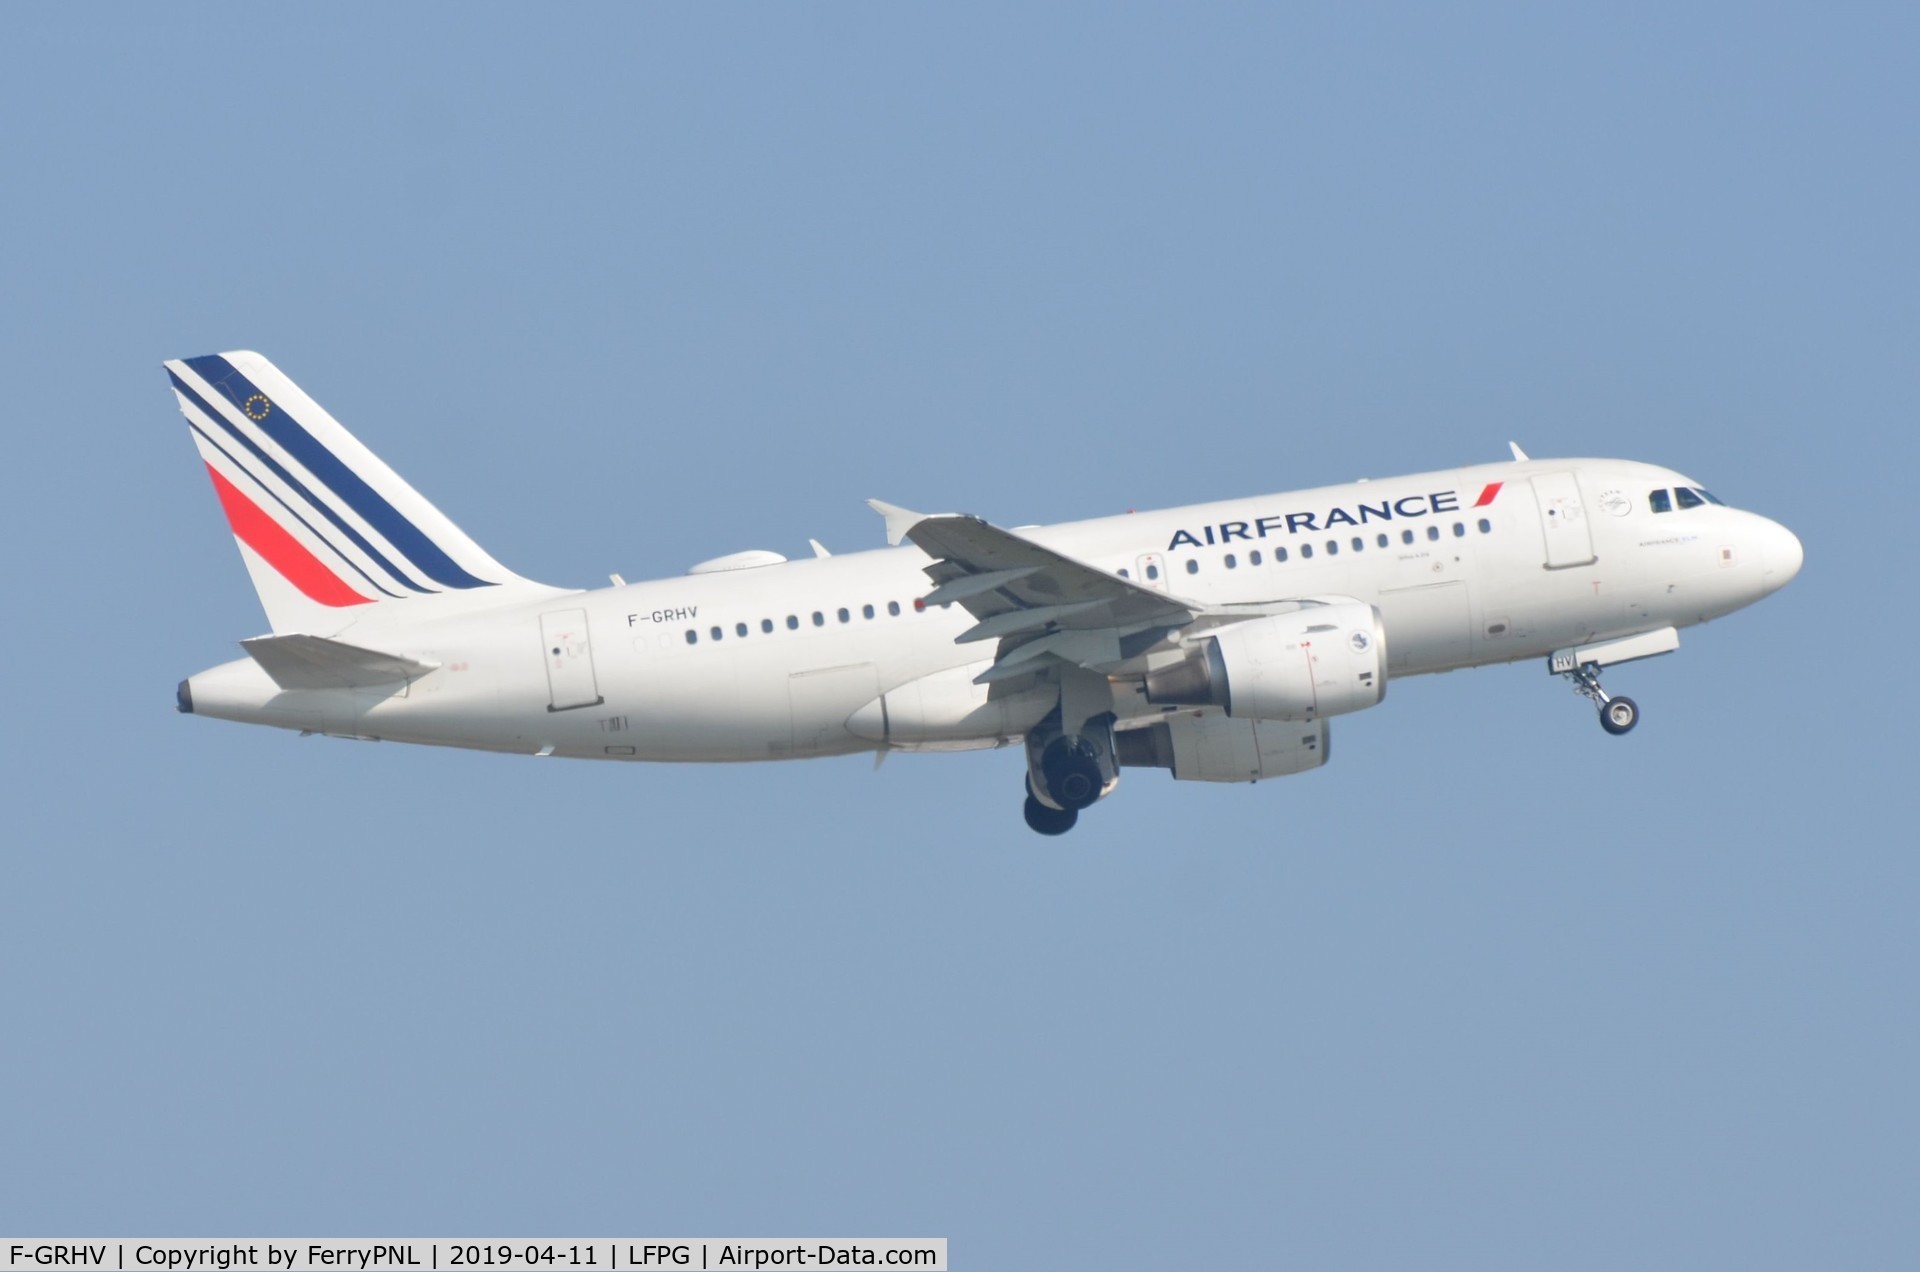 F-GRHV, 2001 Airbus A319-111 C/N 1505, Air France A319 departing